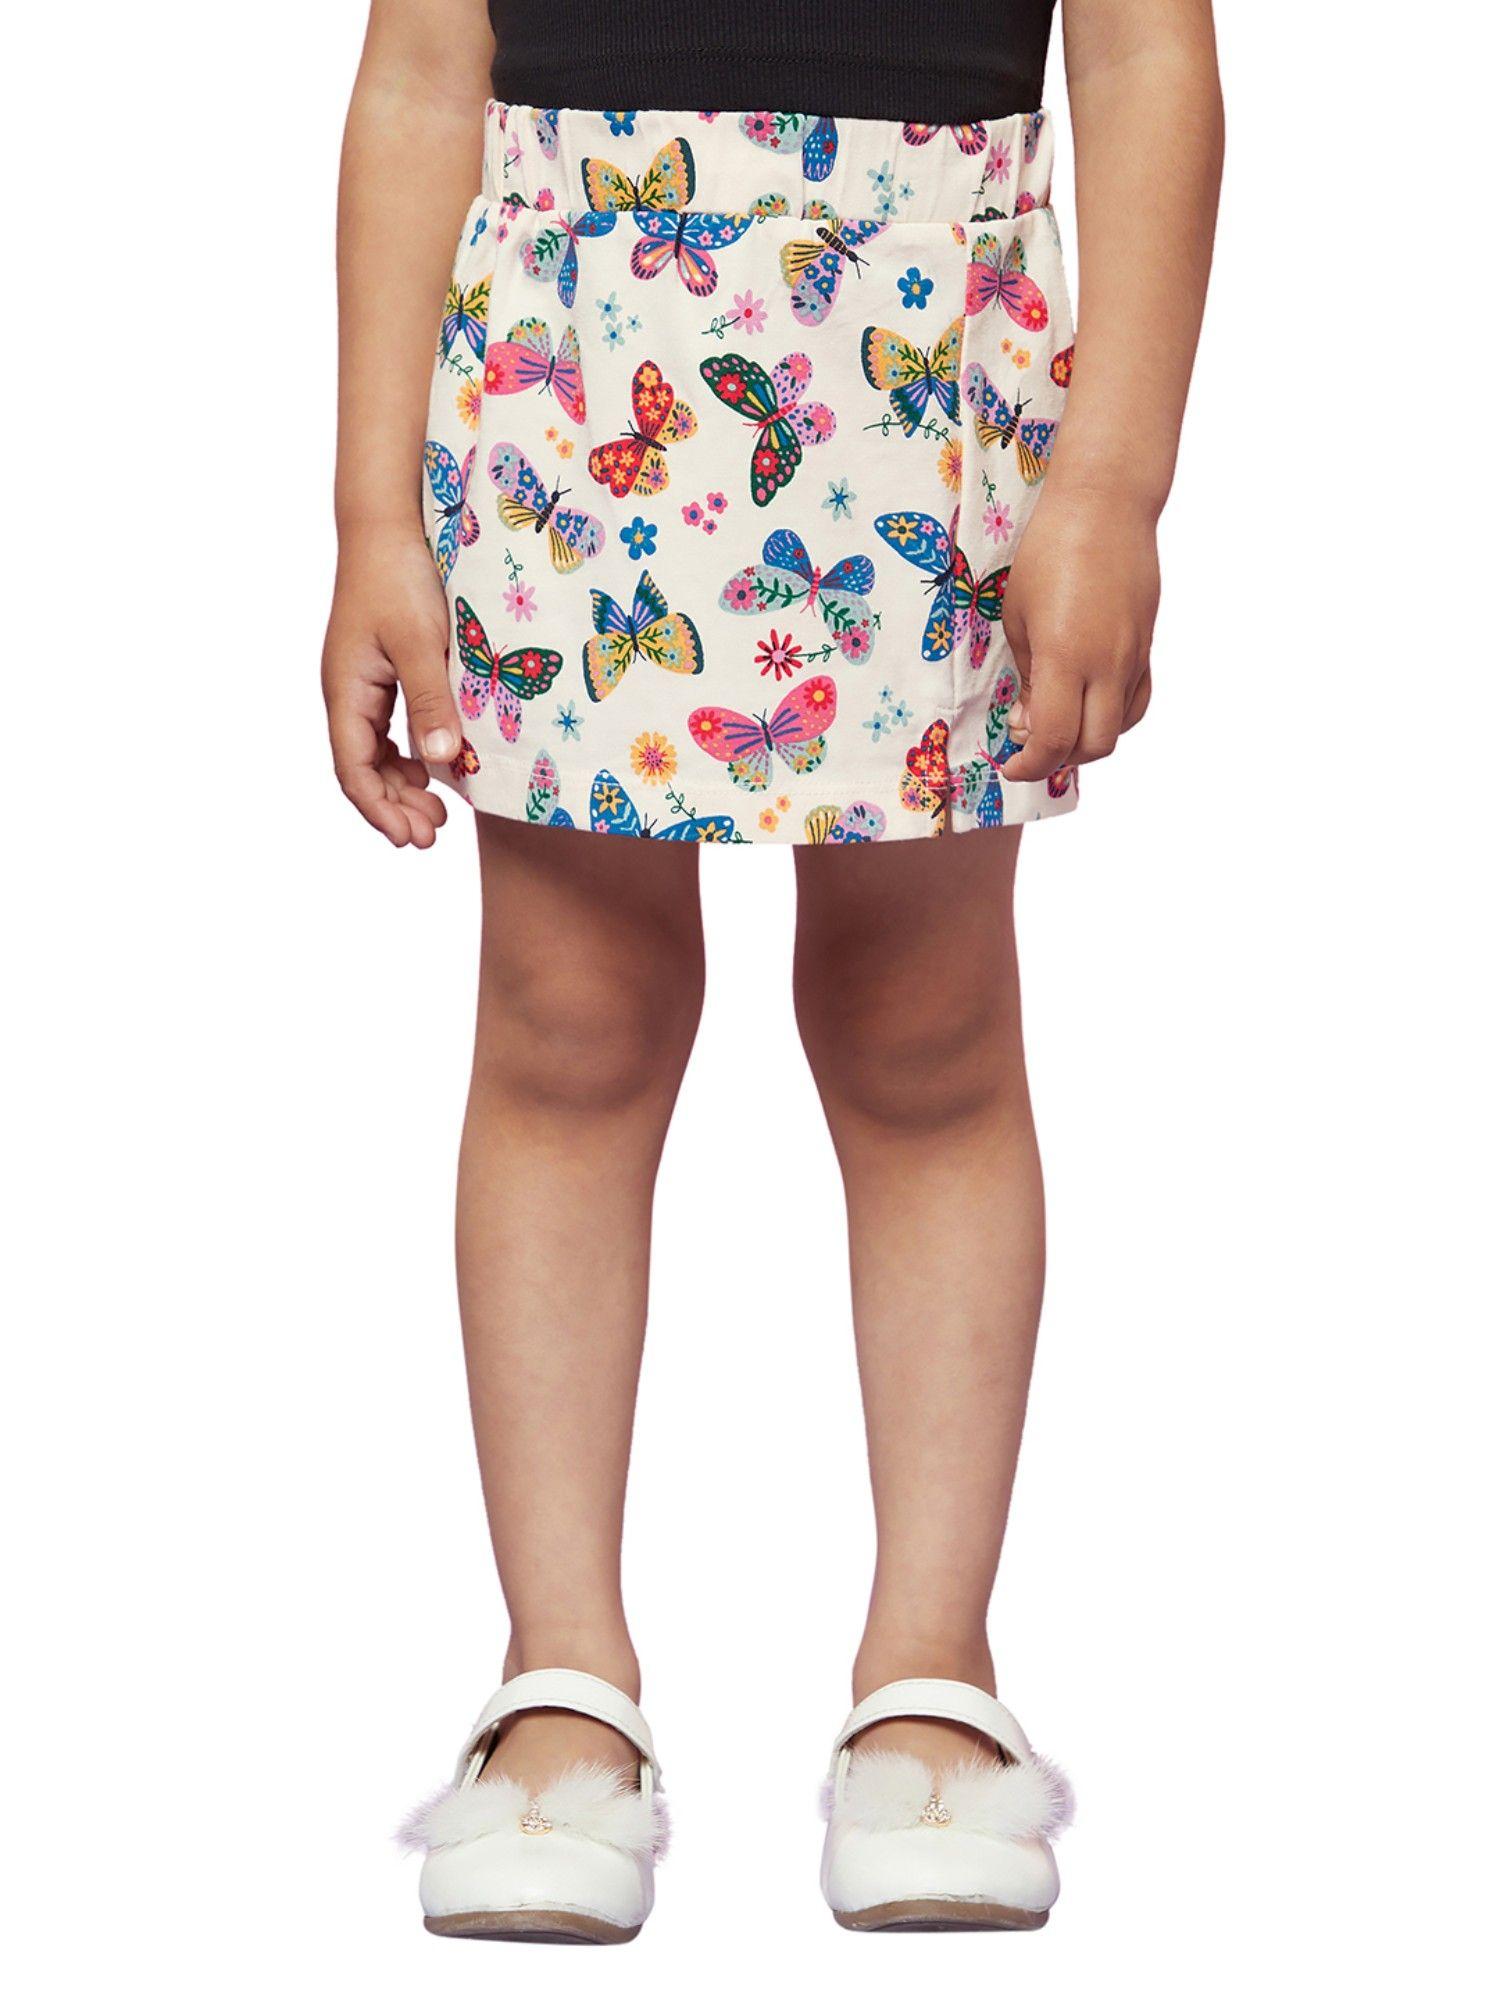 kid-girl-skirt-new-print-mc